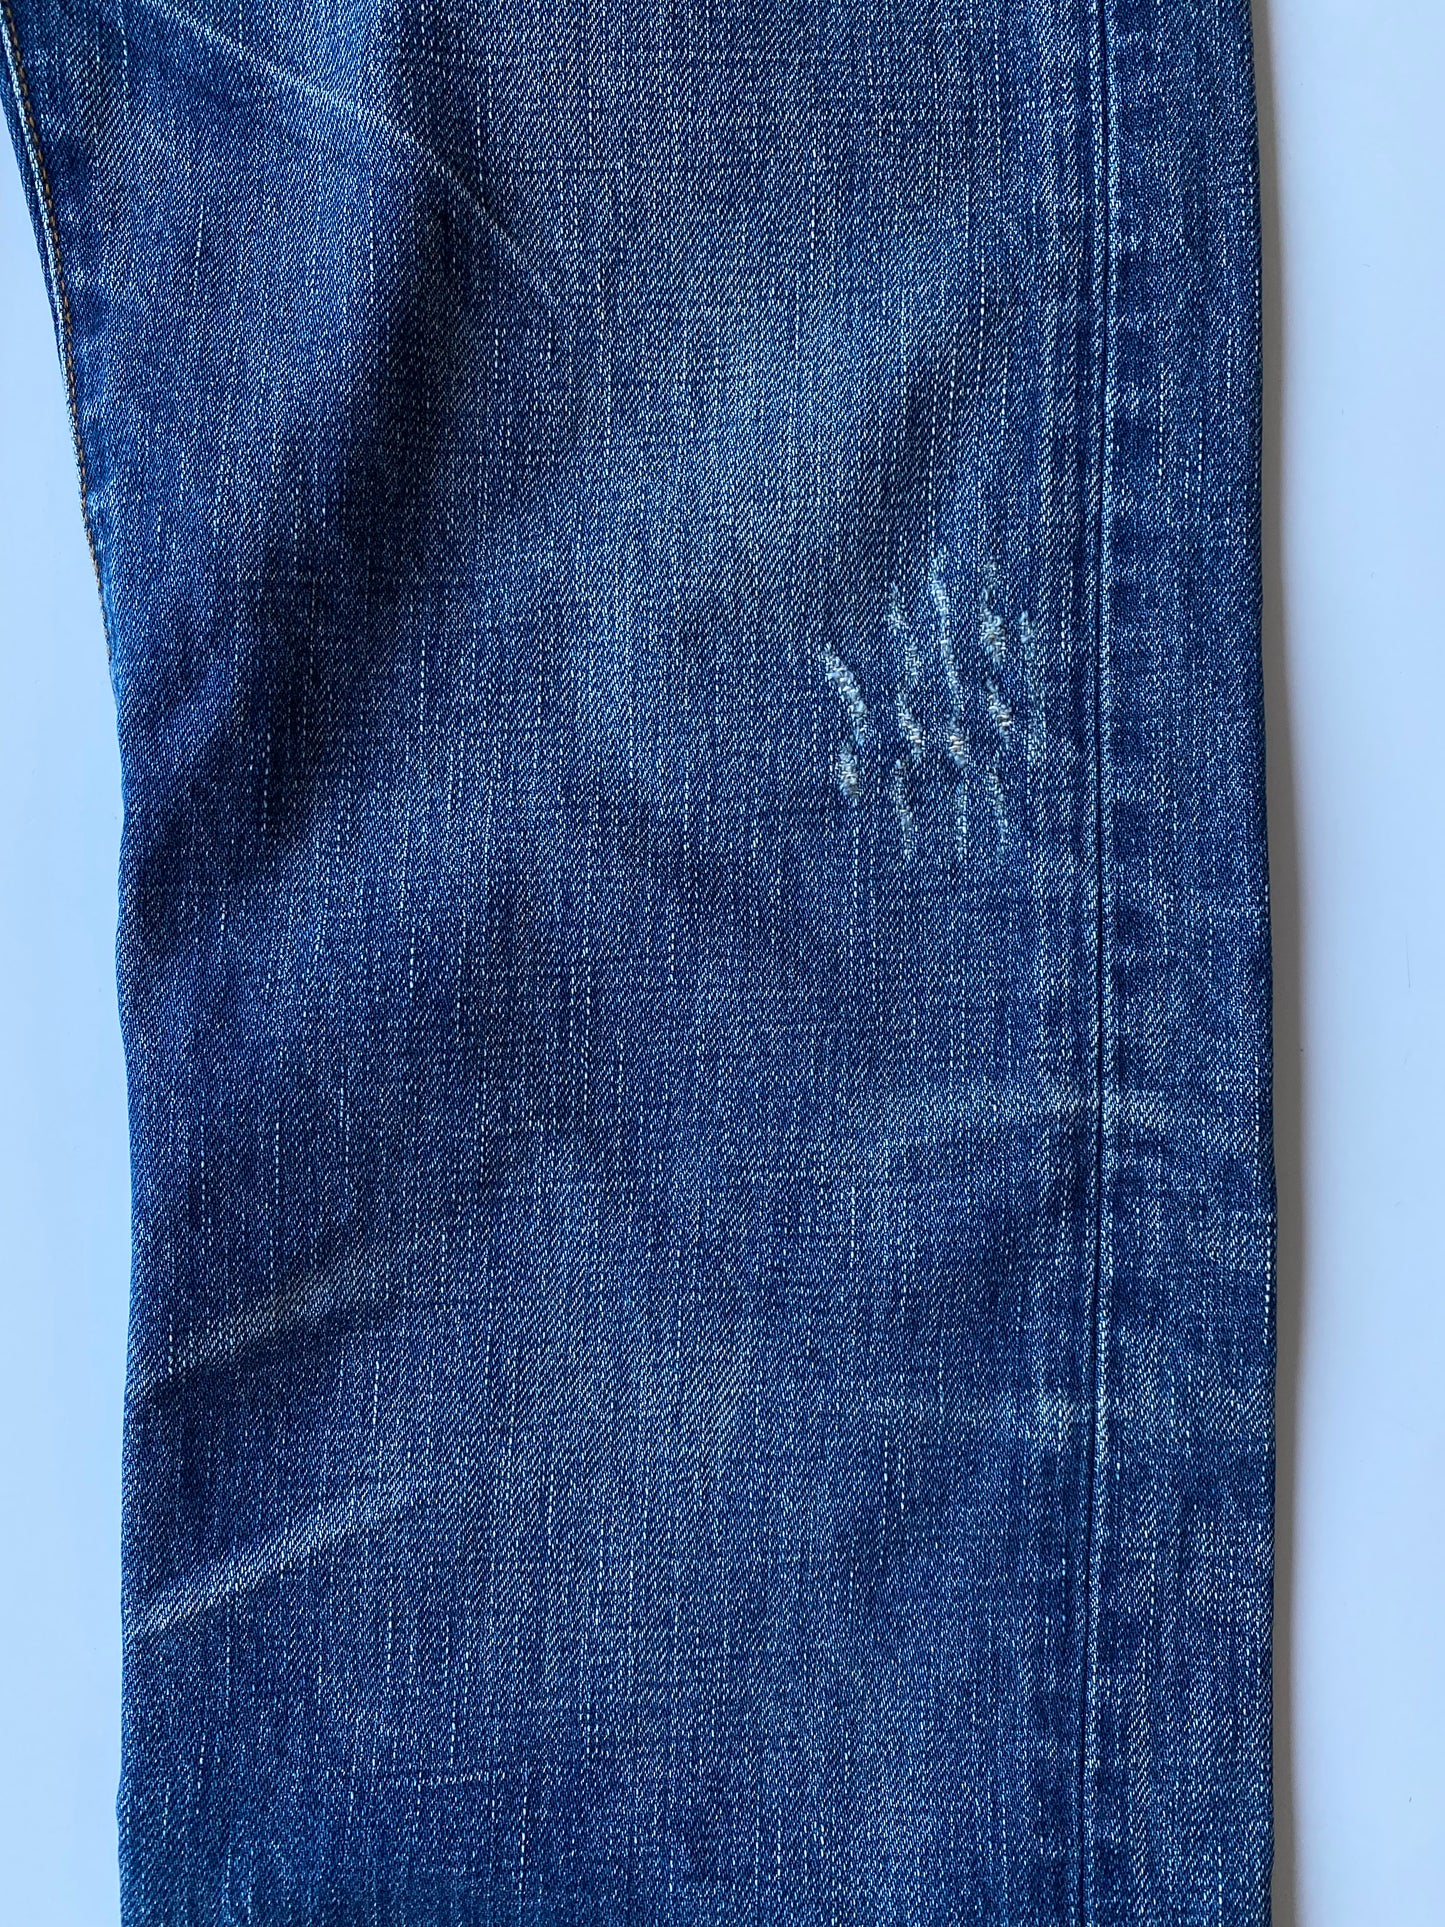 Dior Homme 2003 Clawmark Denim Jeans